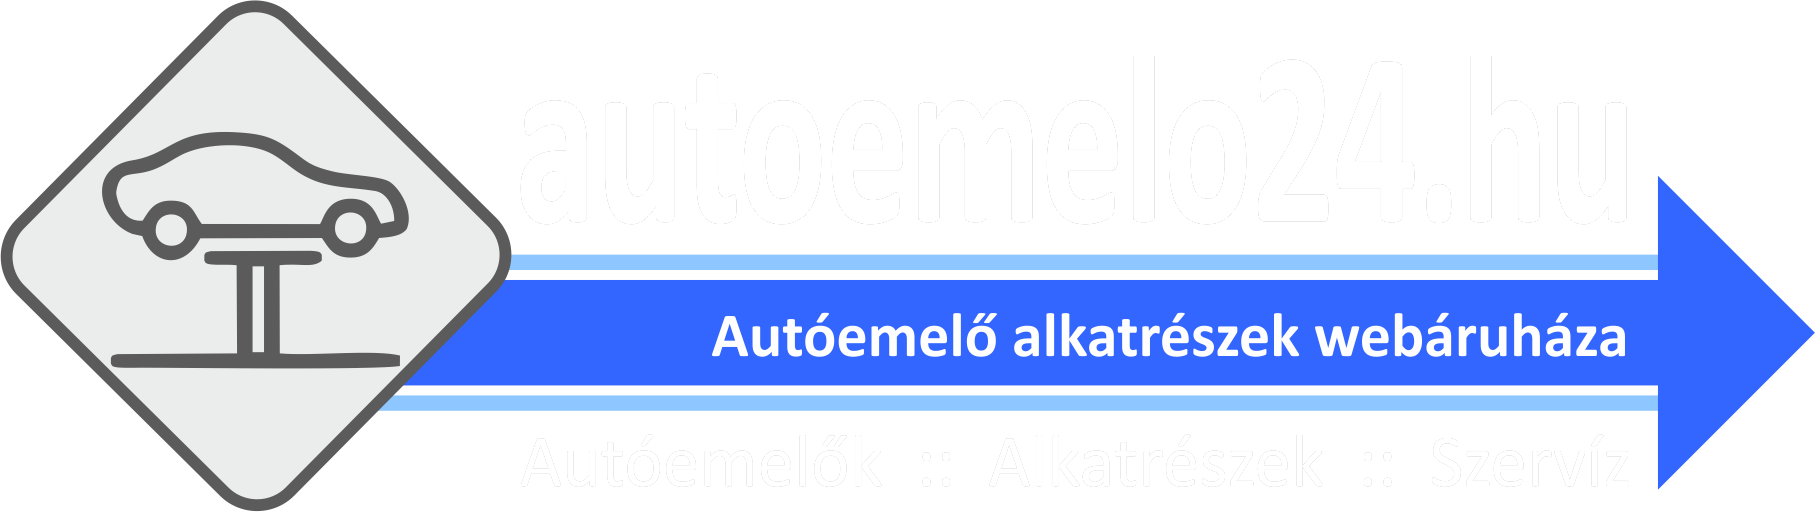 Autoemelo24.hu